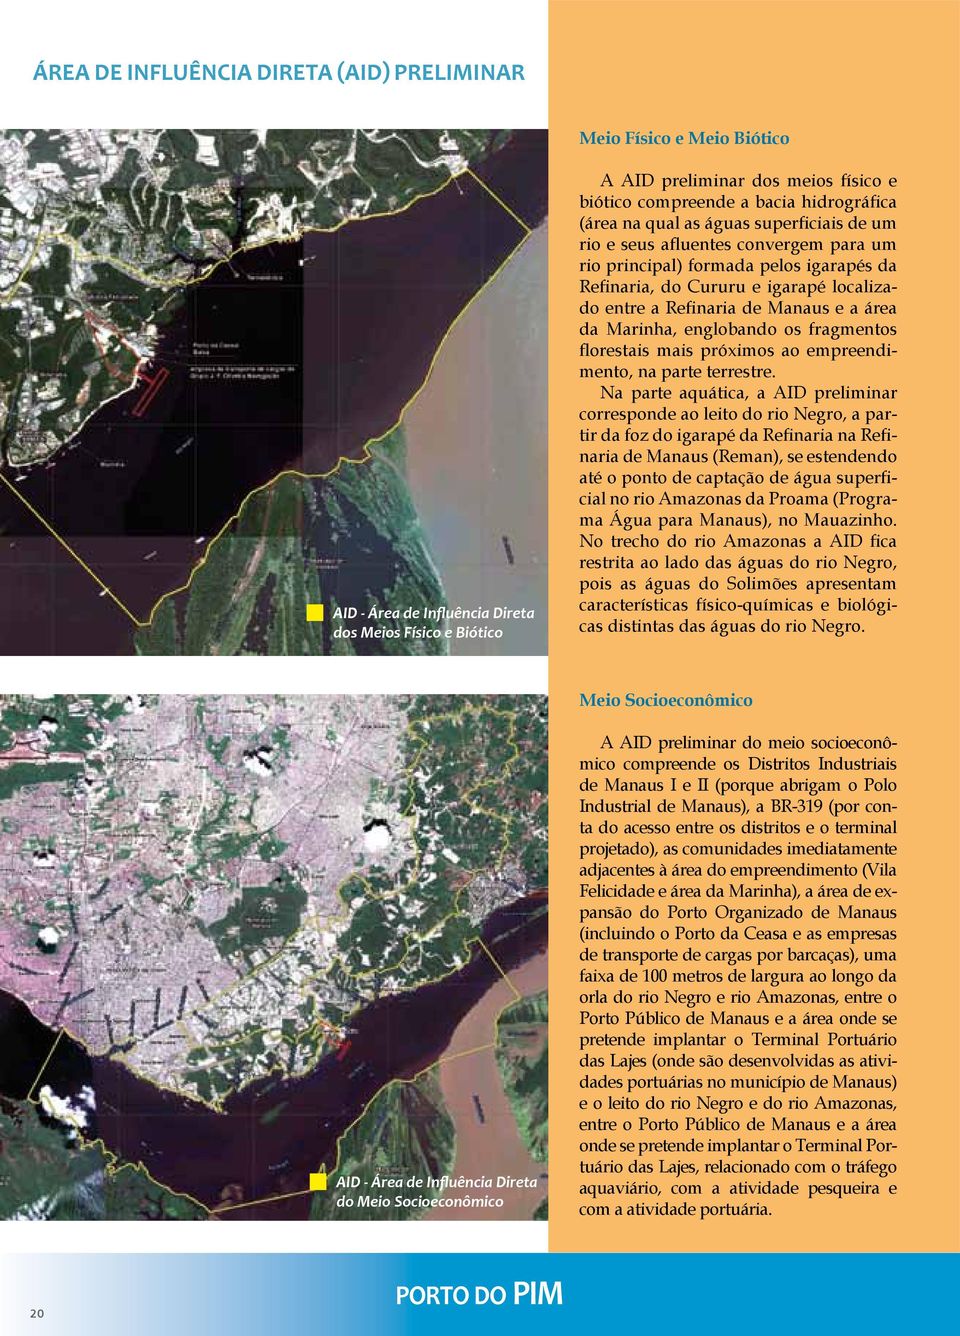 Manaus e a área da Marinha, englobando os fragmentos florestais mais próximos ao empreendimento, na parte terrestre.